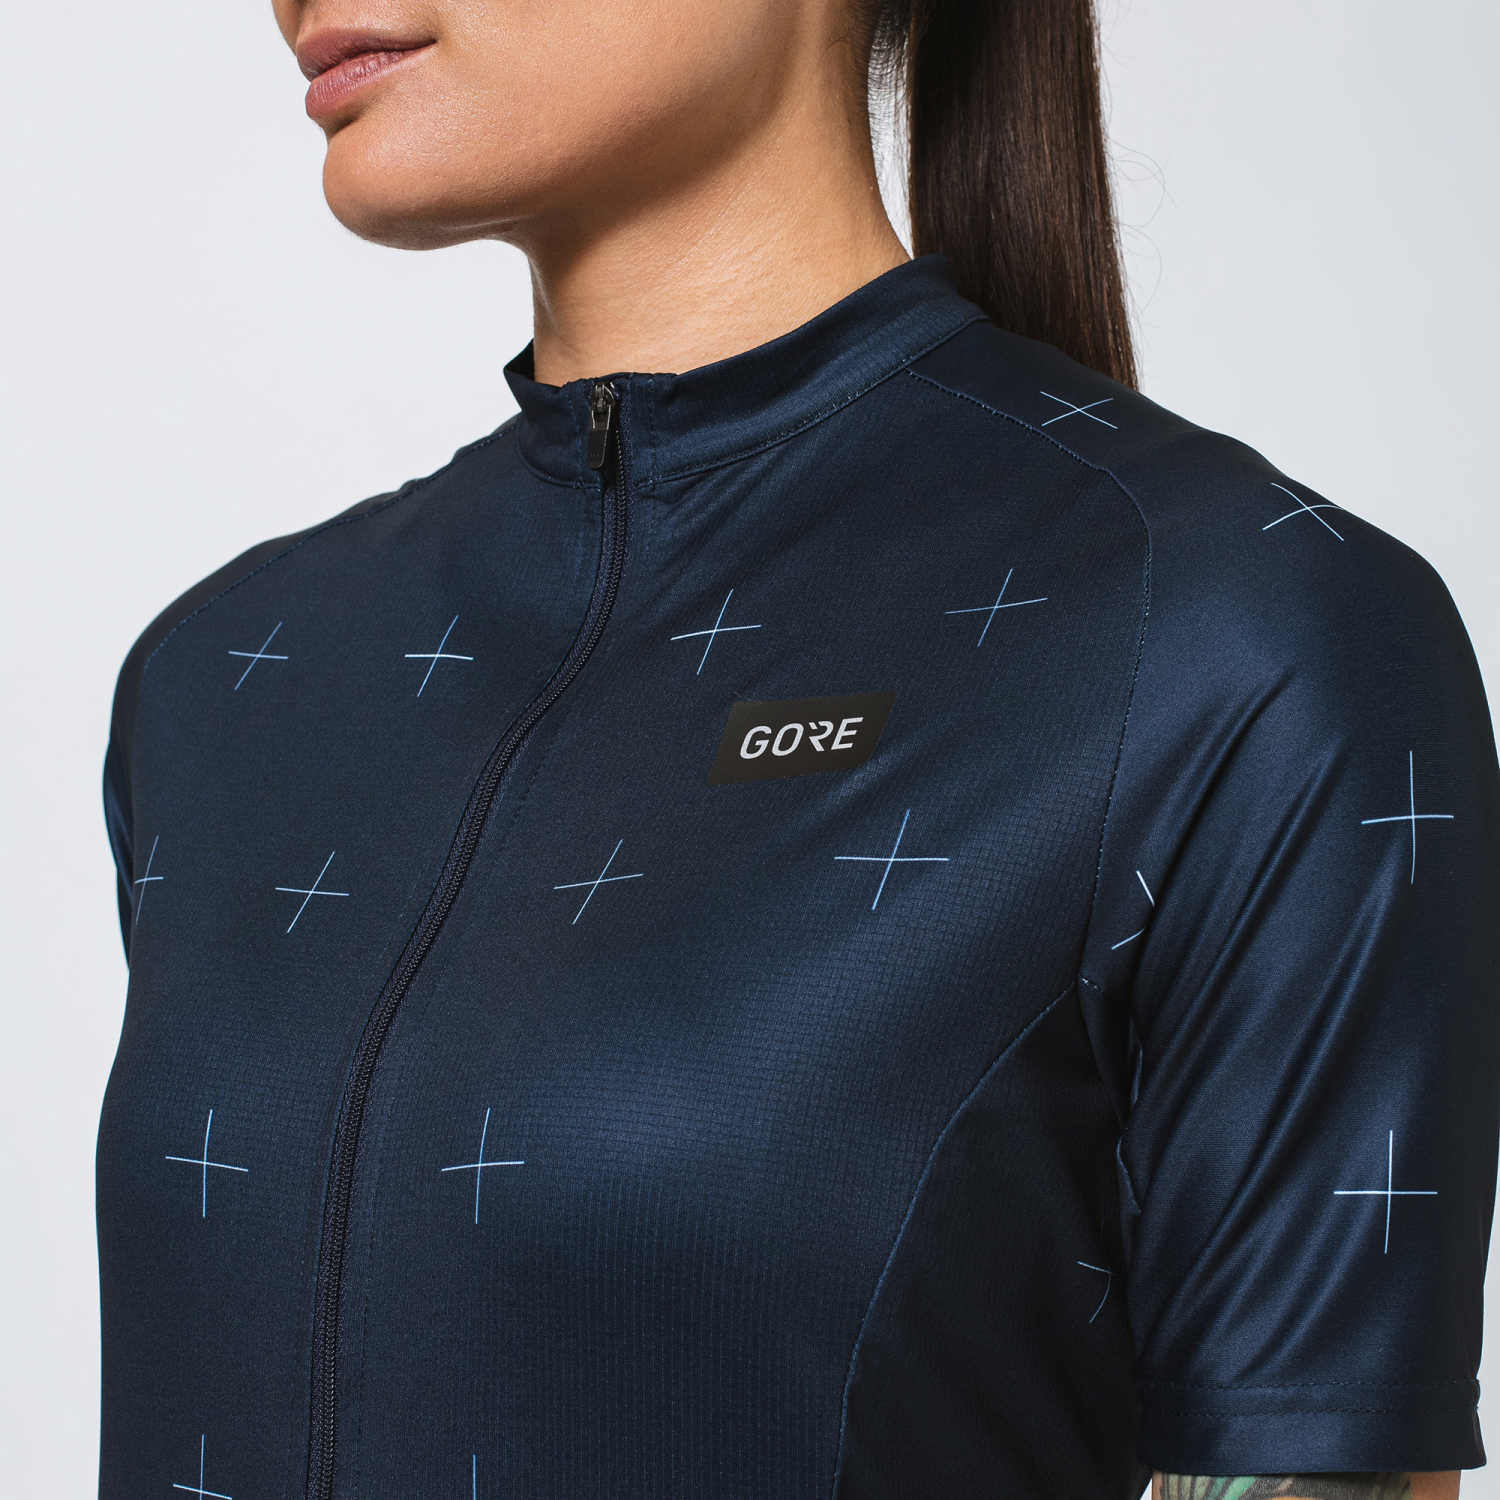 Colección de verano Gore Wear 2019 - Test de producto, opinión y compra